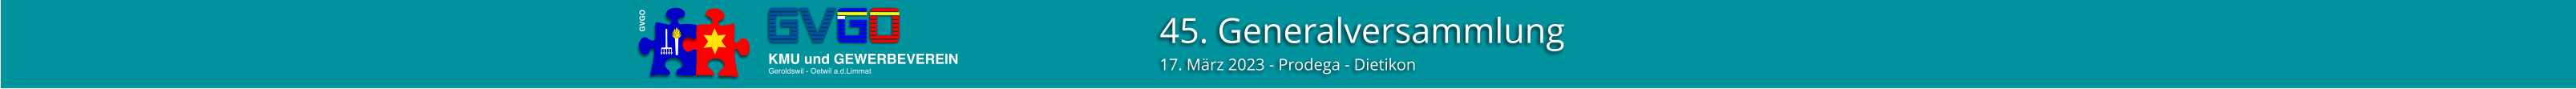 45. Generalversammlung 17. März 2023 - Prodega - Dietikon GVGO KMU und GEWERBEVEREIN Geroldswil - Oetwil a.d.Limmat